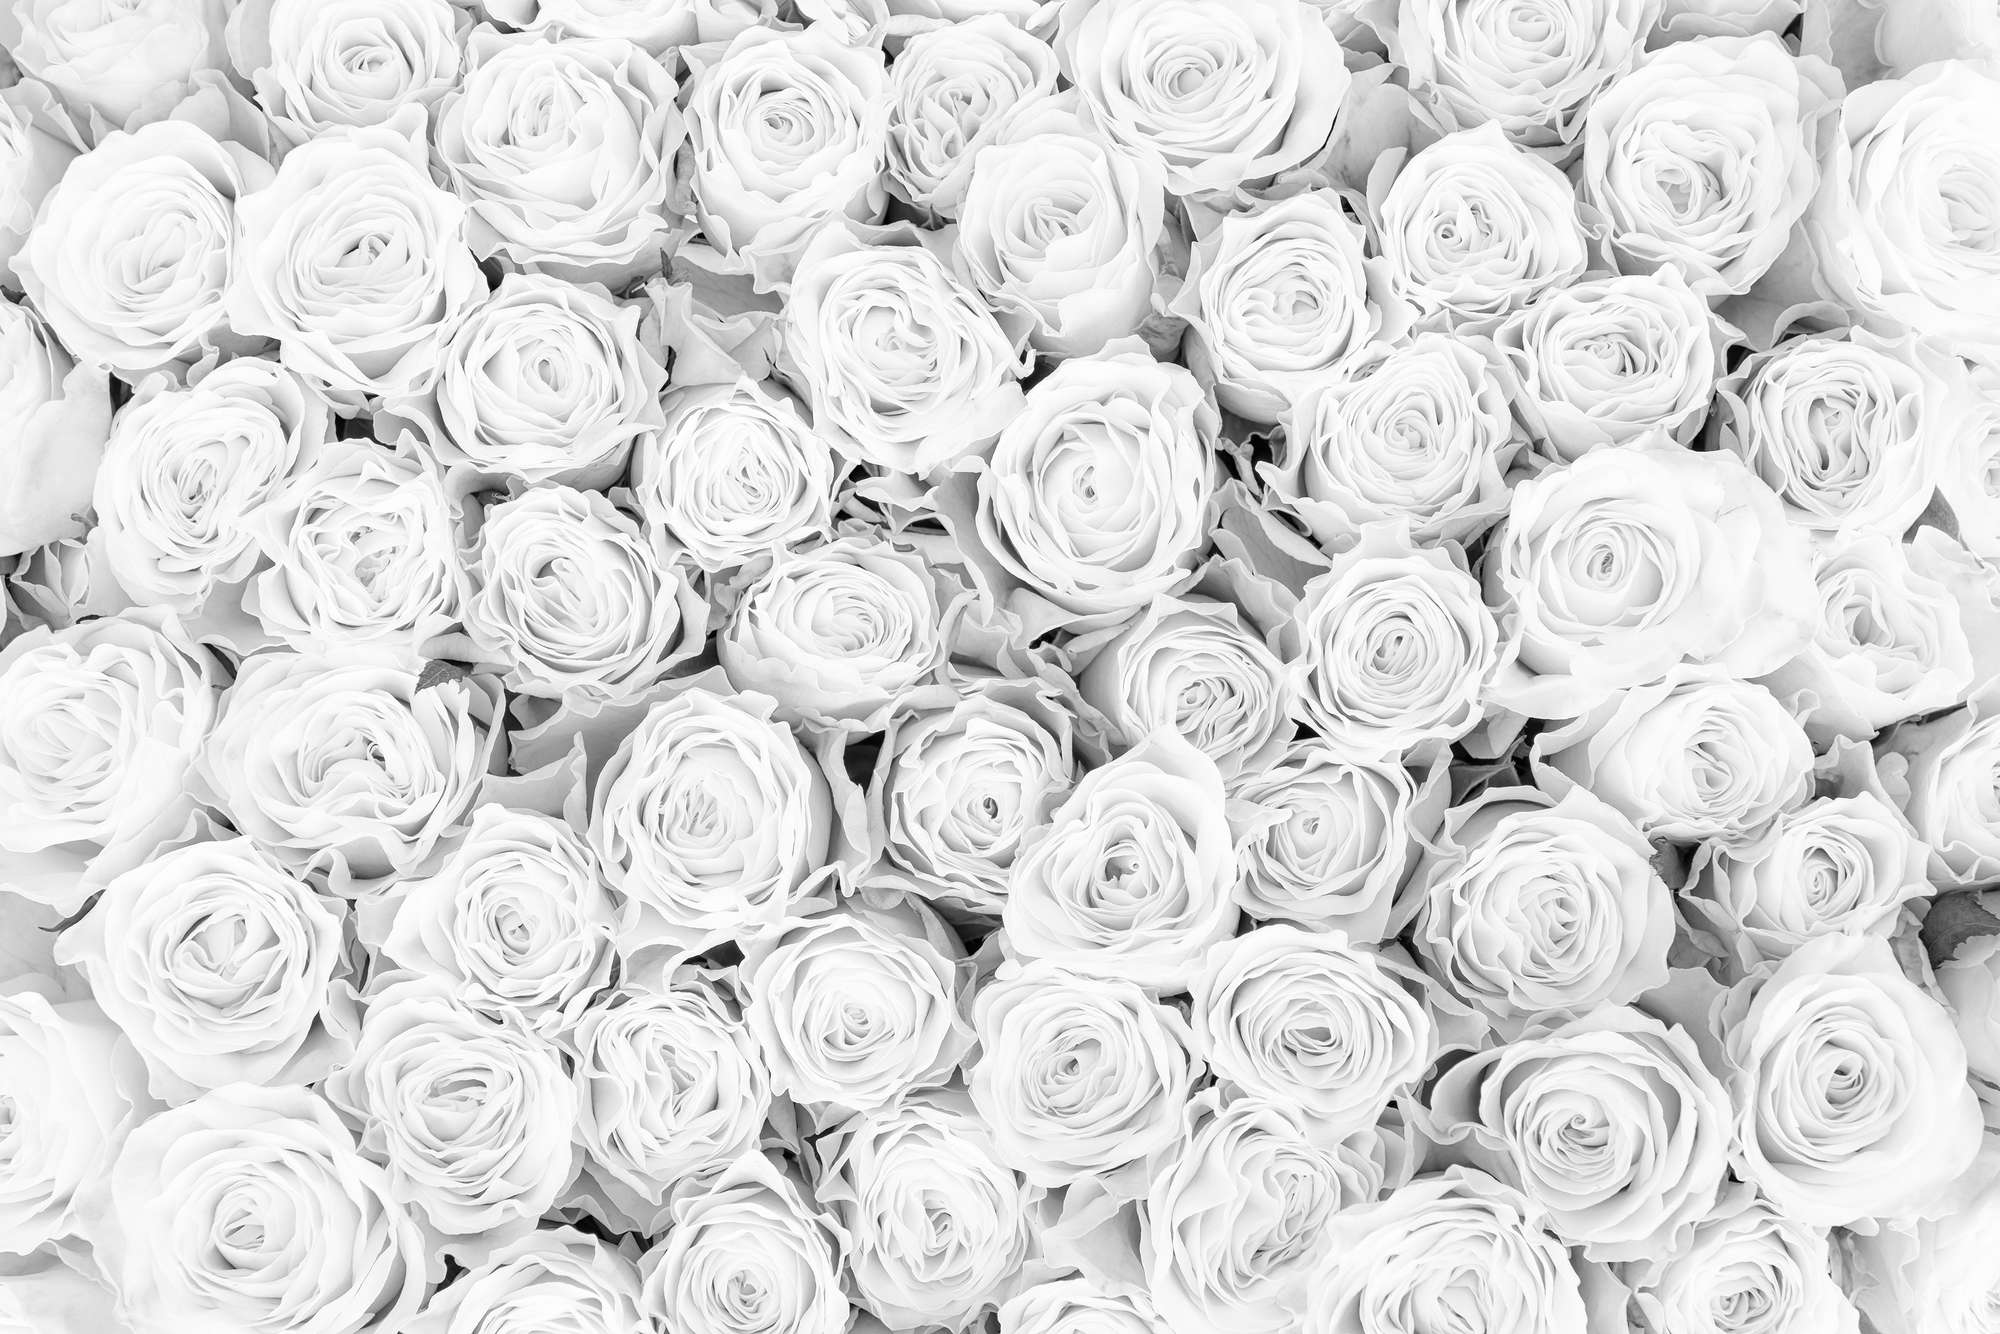             Plants mural white roses on textured fleece
        